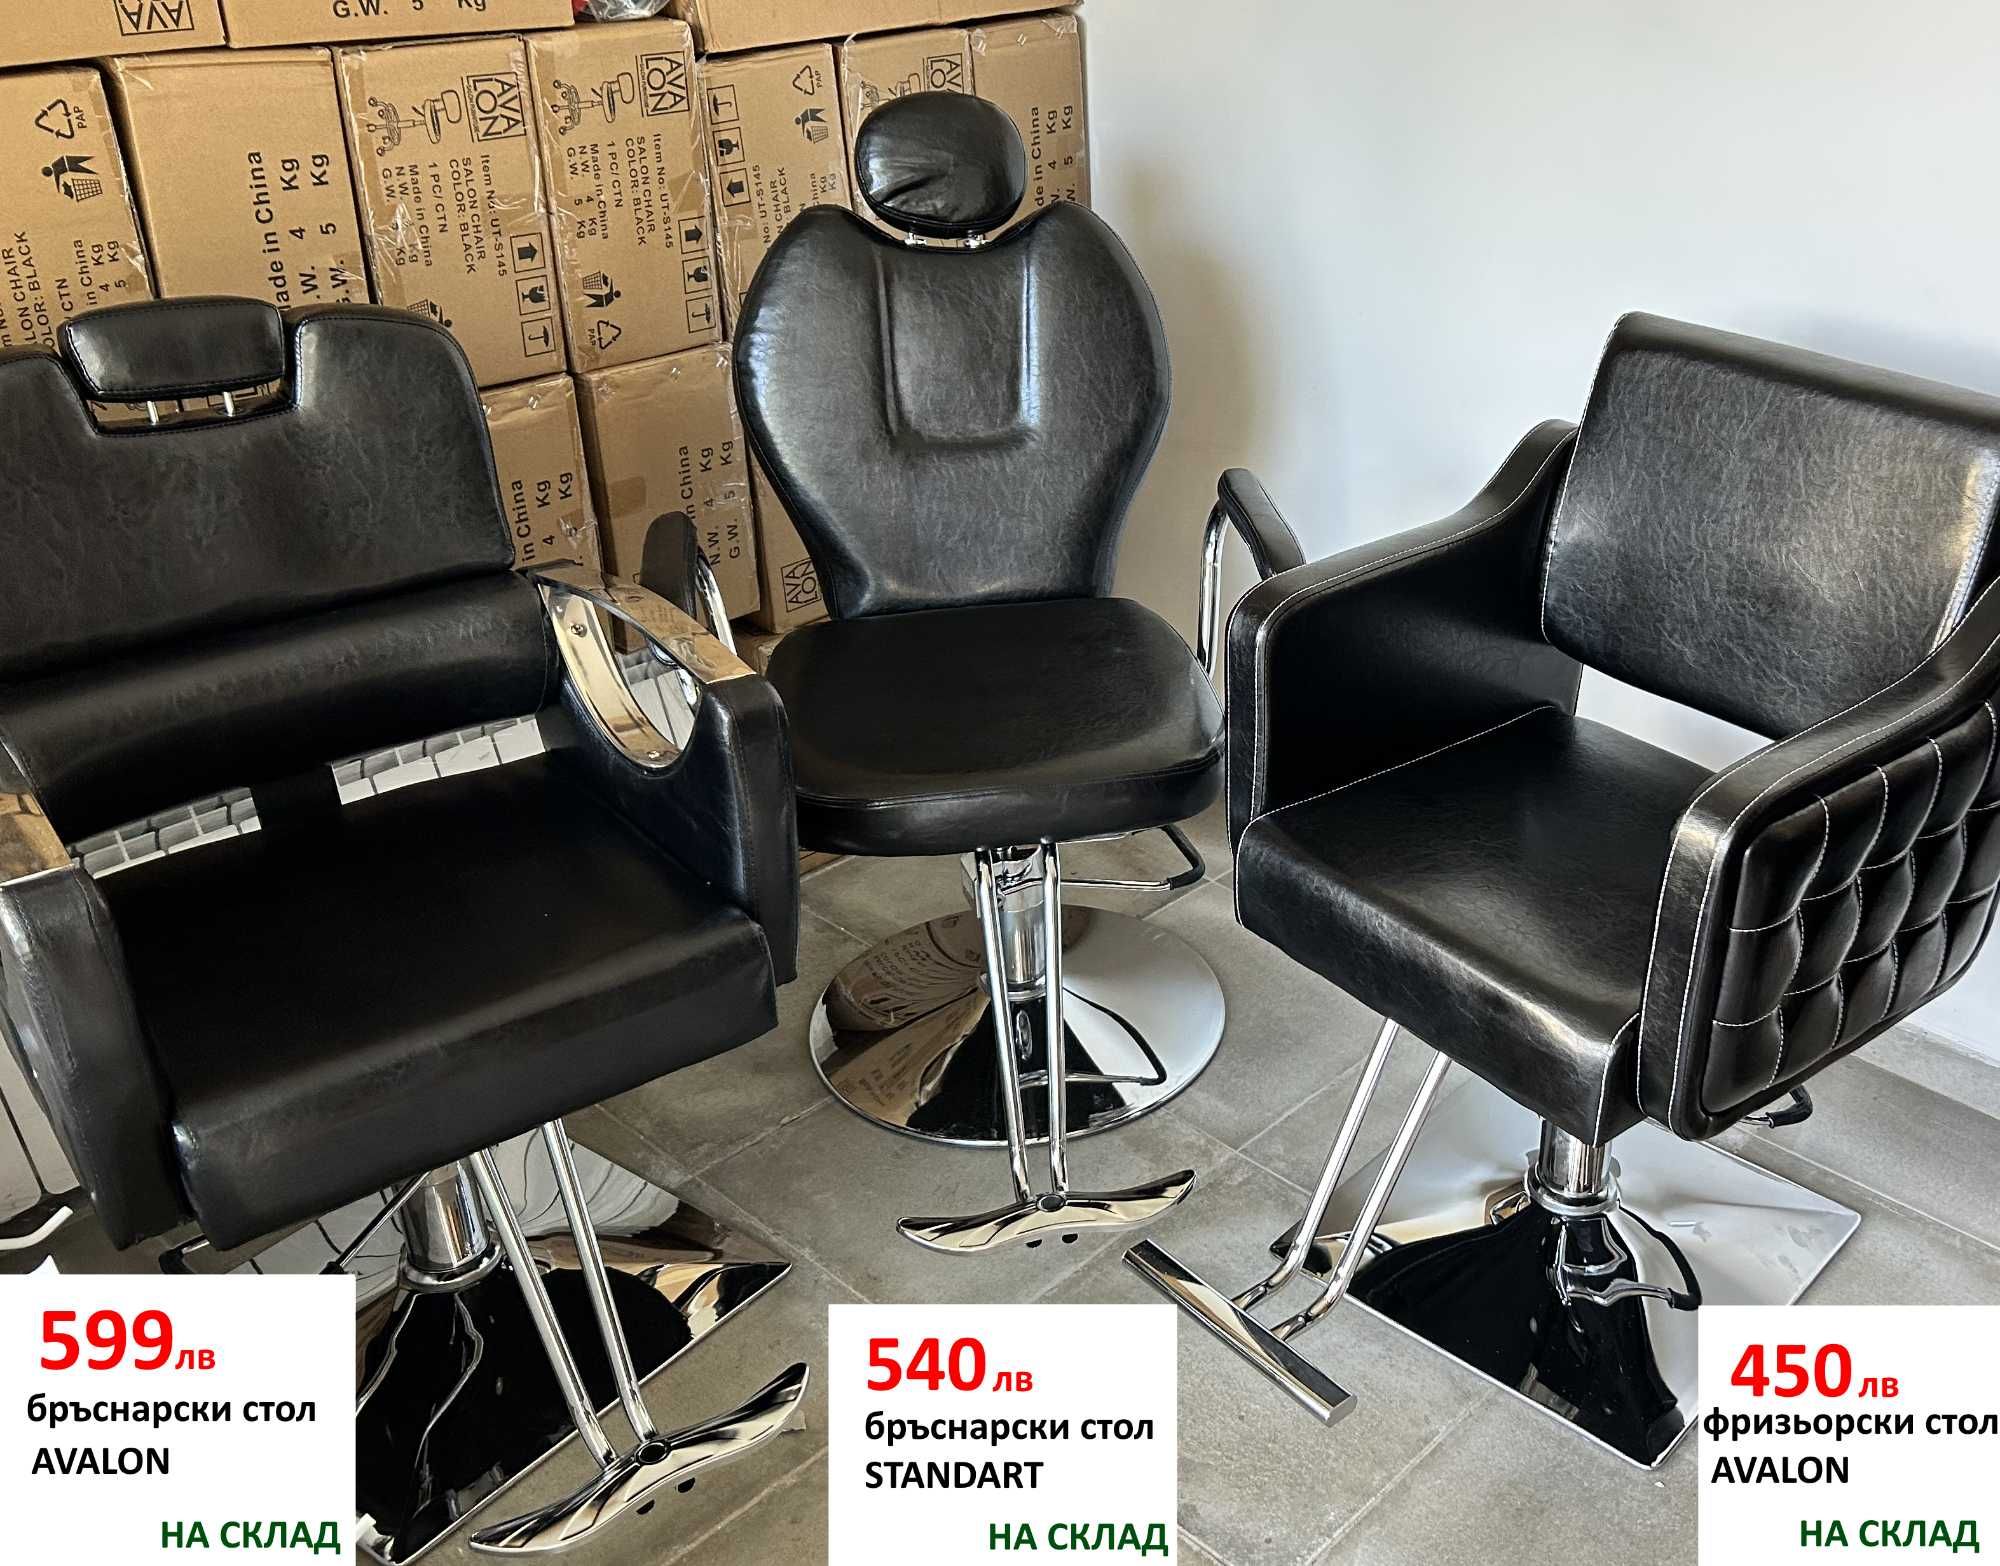 Фризьорски столове на ниски цени - има и бръснарски